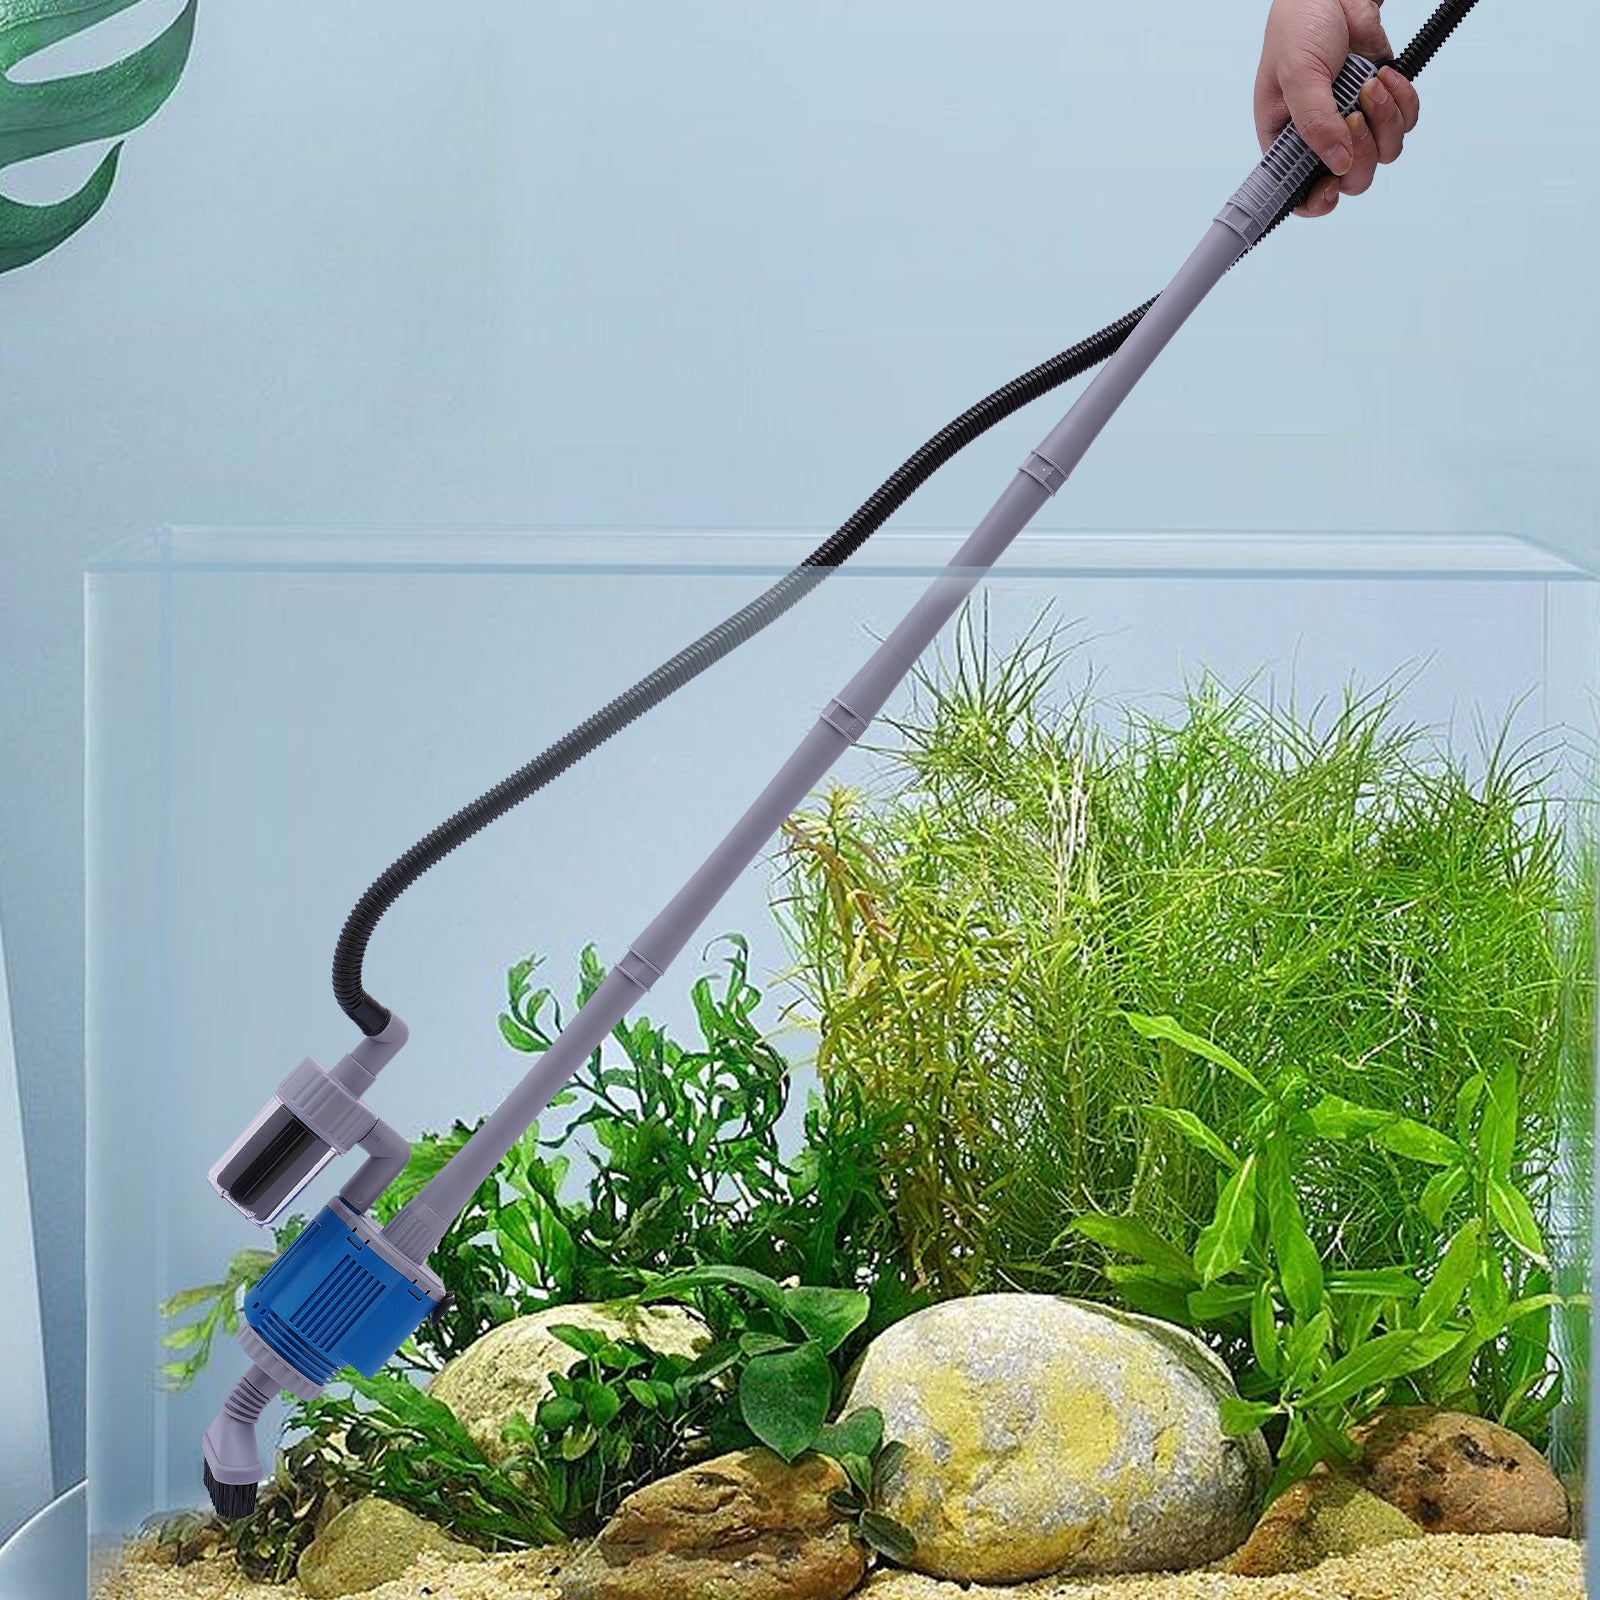 Pompa a sifone elettrica per acquario, pulitore per ghiaia,con 4 tubi di prolunga per la pulizia